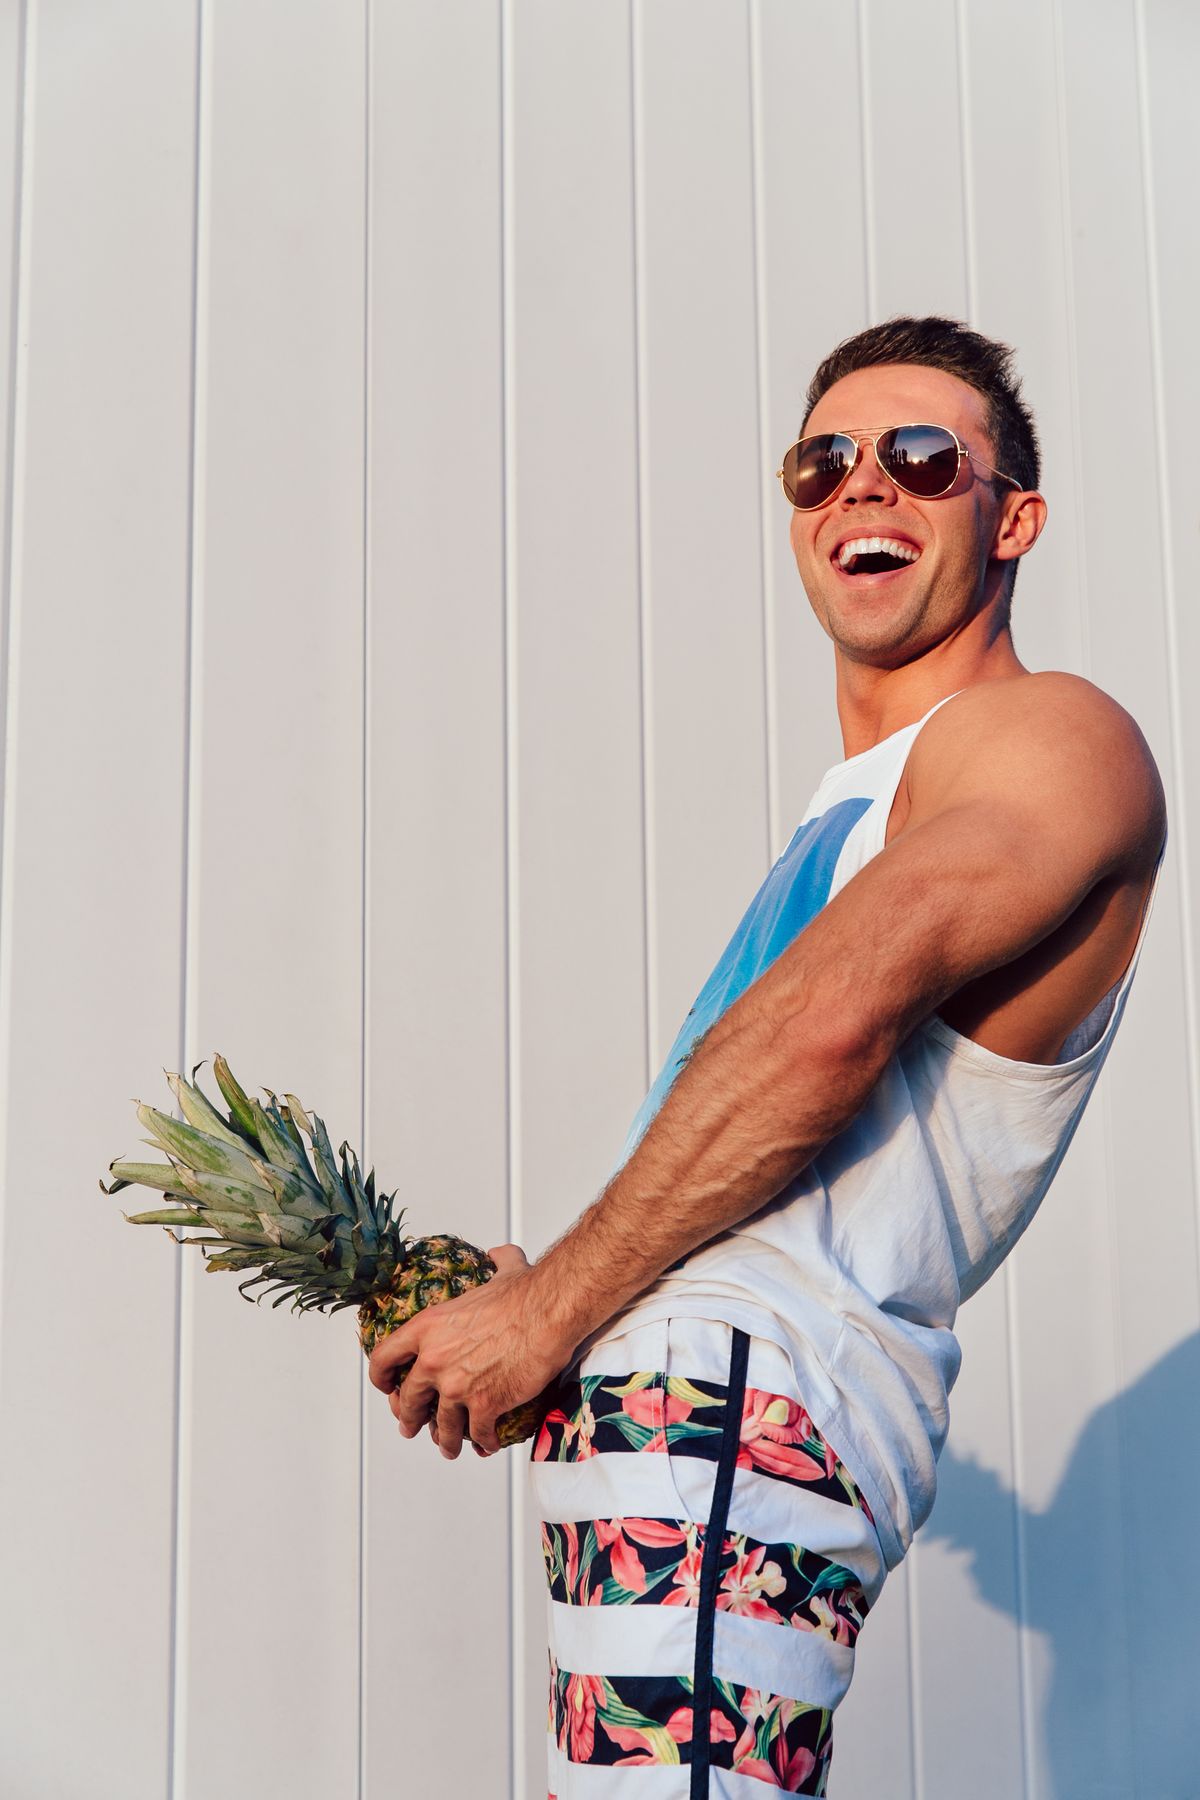 Summer photo of joyful man with pineapple.